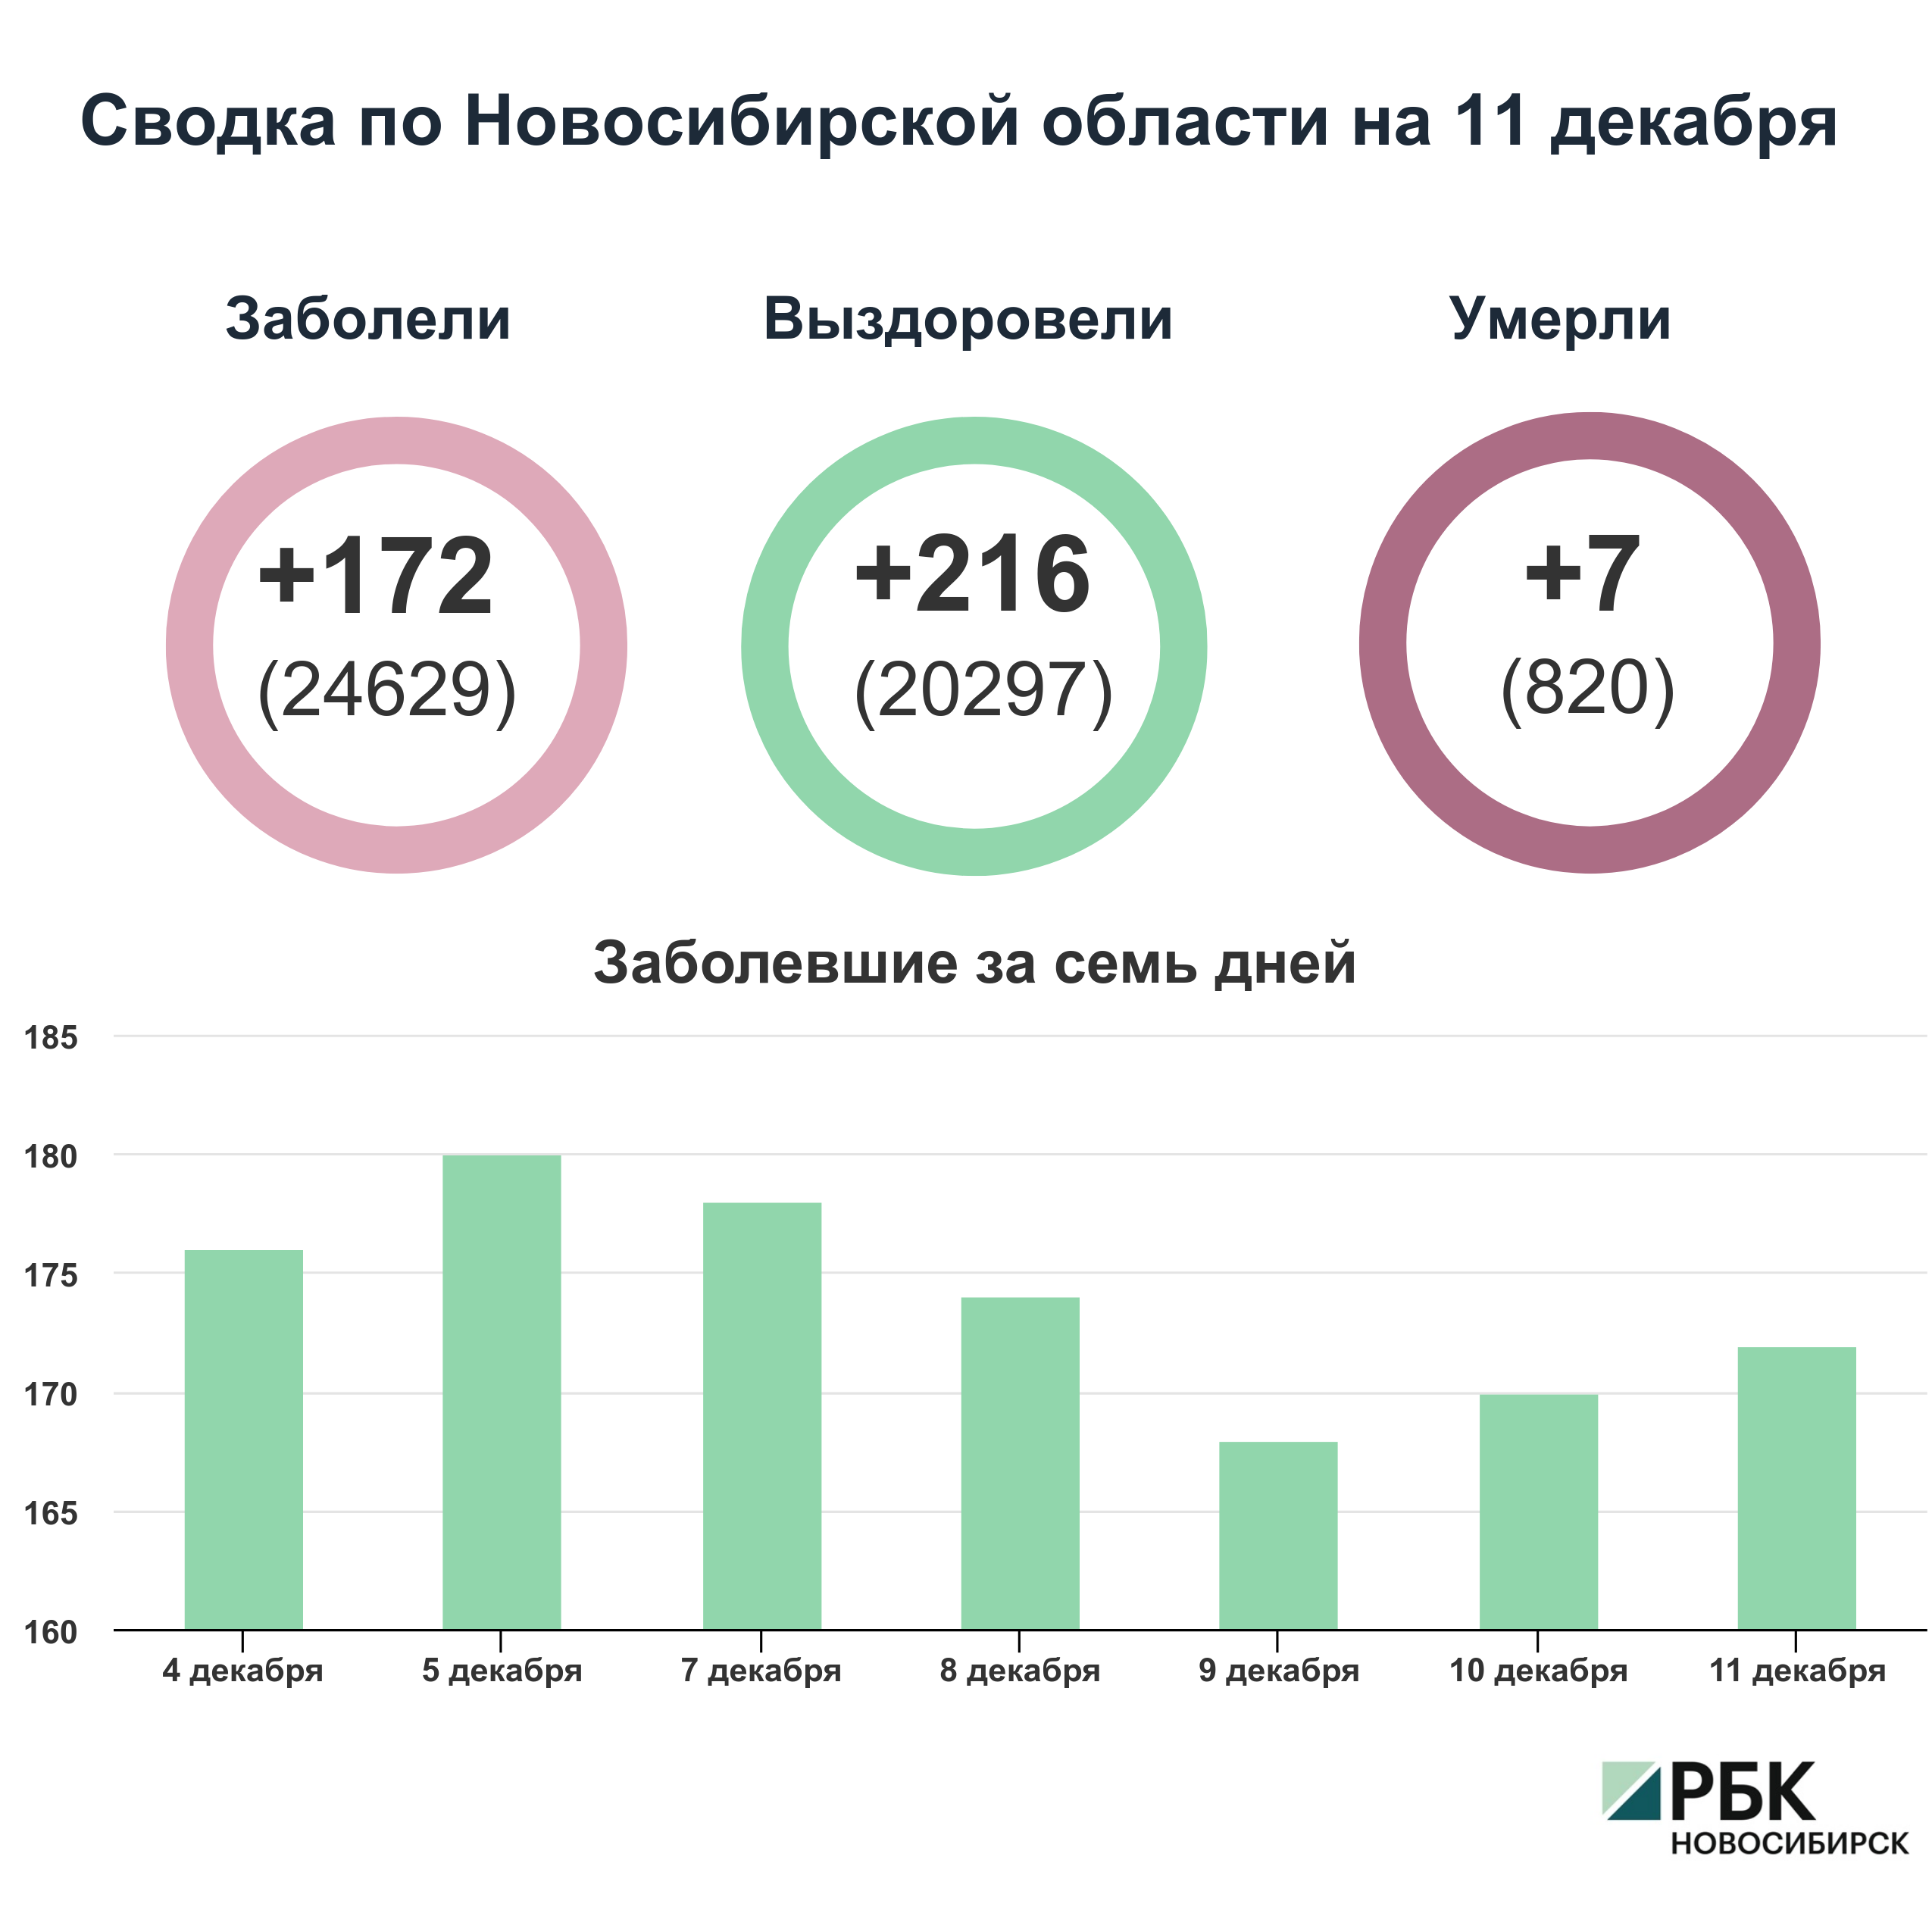 Коронавирус в Новосибирске: сводка на 11 декабря